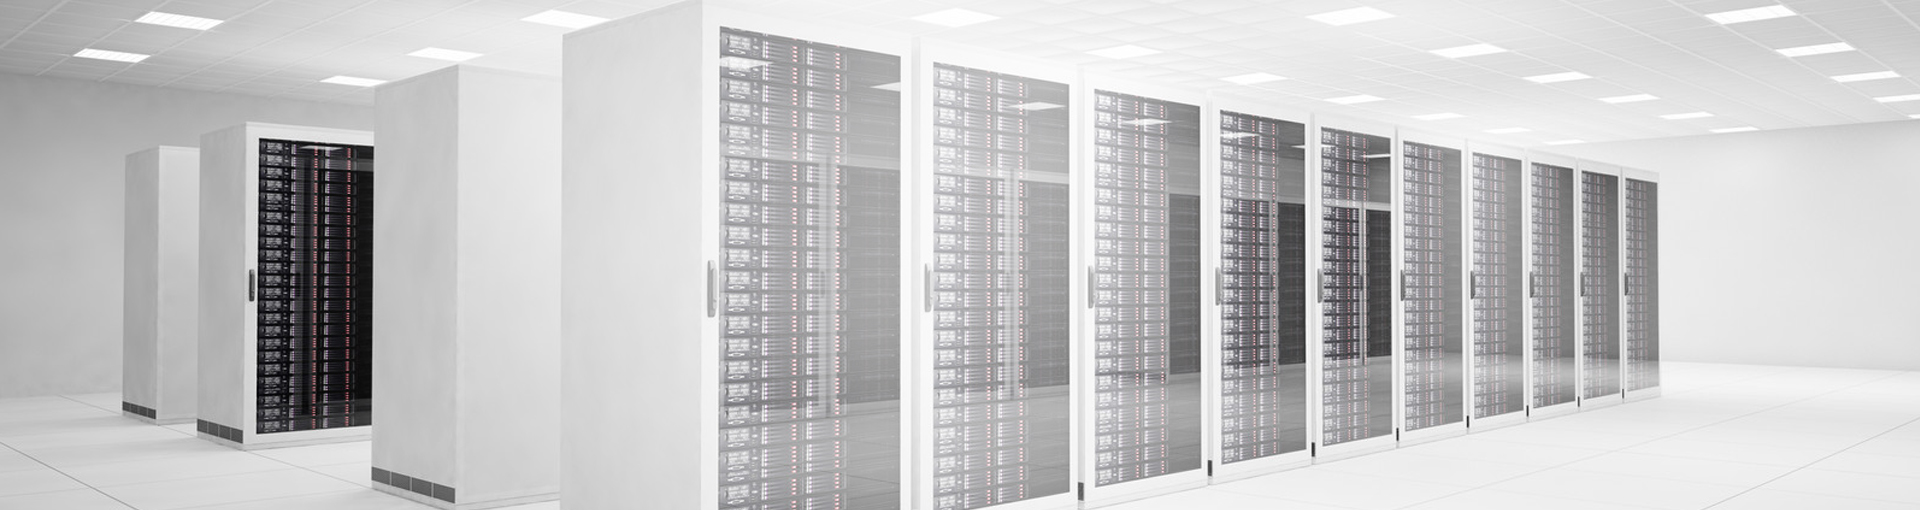 Regal Data Centre & Server Room cooling